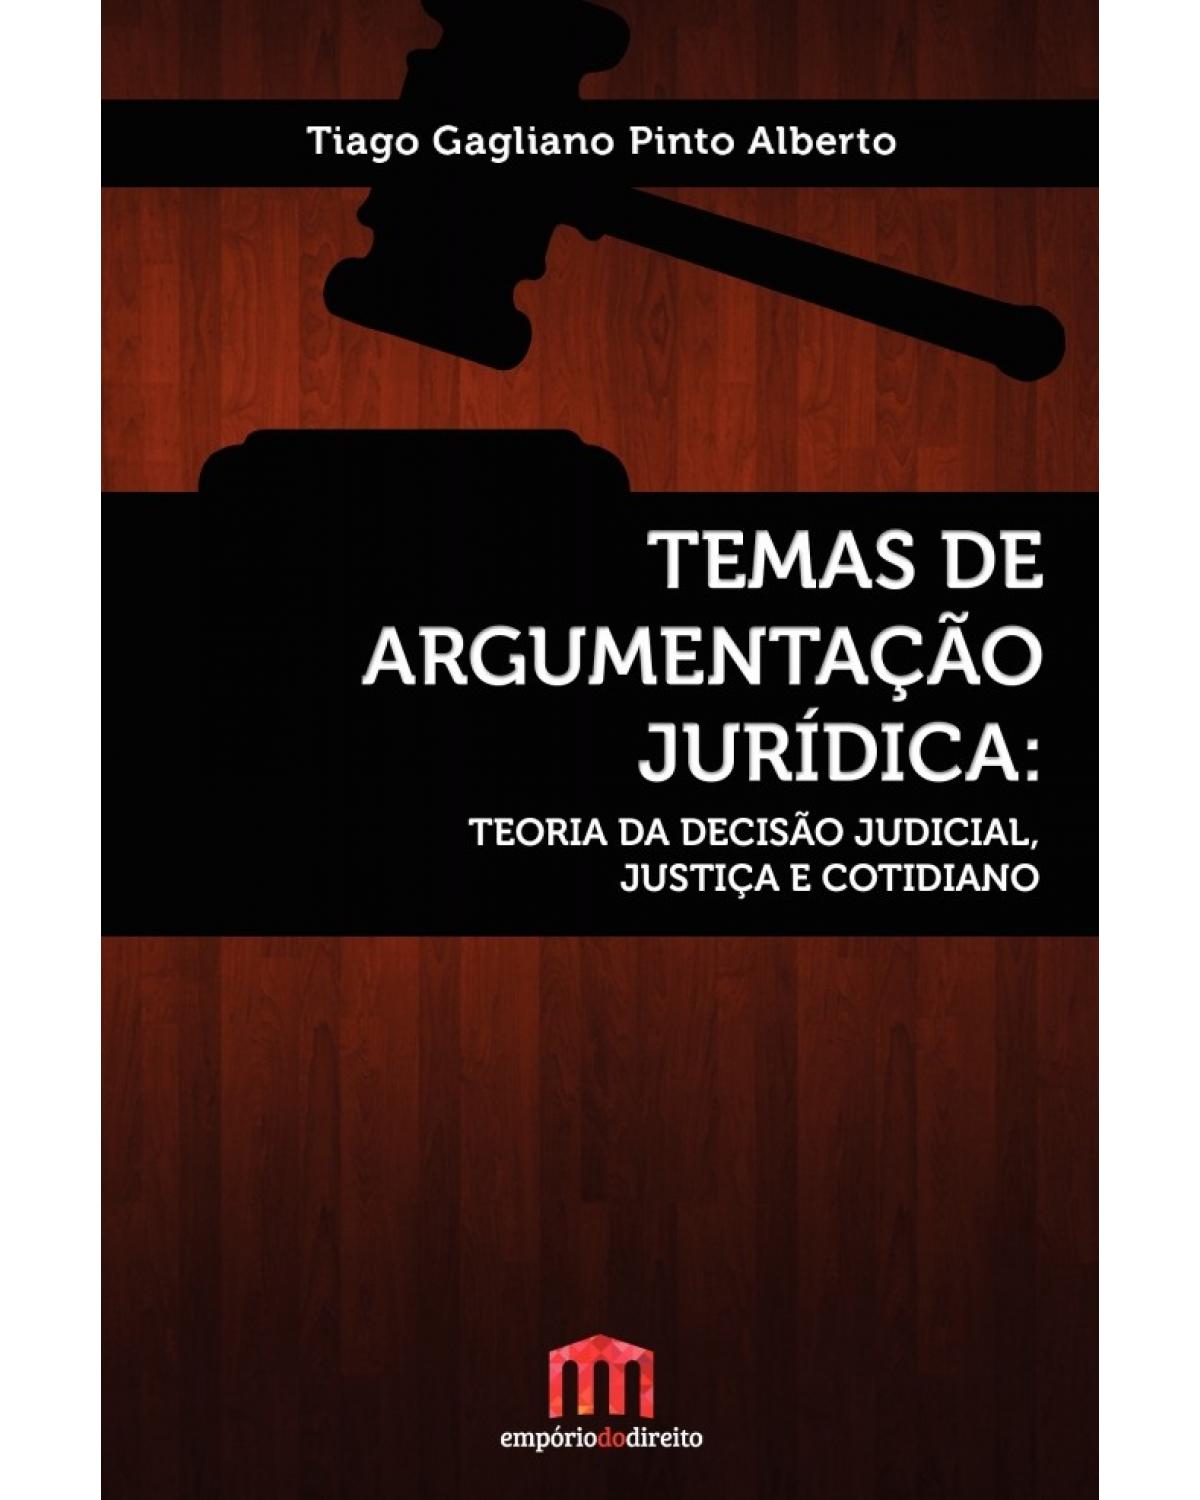 Temas de argumentação jurídica - Teoria da decisão judicial, justiça e cotidiano - 1ª Edição | 2016